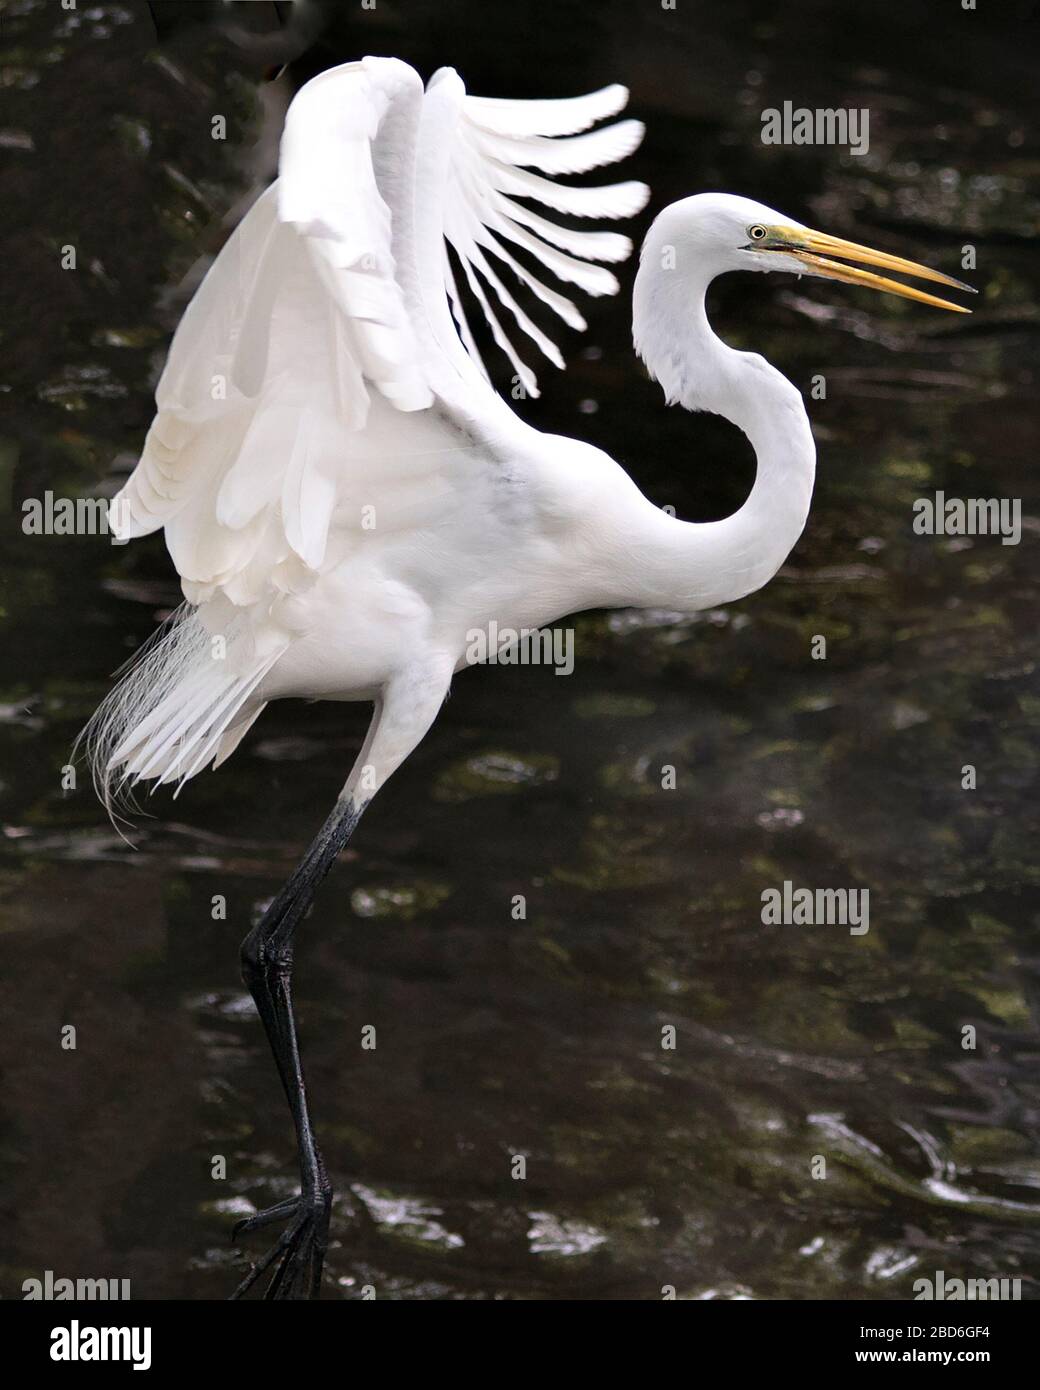 Vista ravvicinata dell'uccello dell'Egret bianco grande in piedi nell'acqua con le ali sparse con uno sfondo dell'acqua che mostra la testa, il becco, l'occhio, la piuma bianca Foto Stock